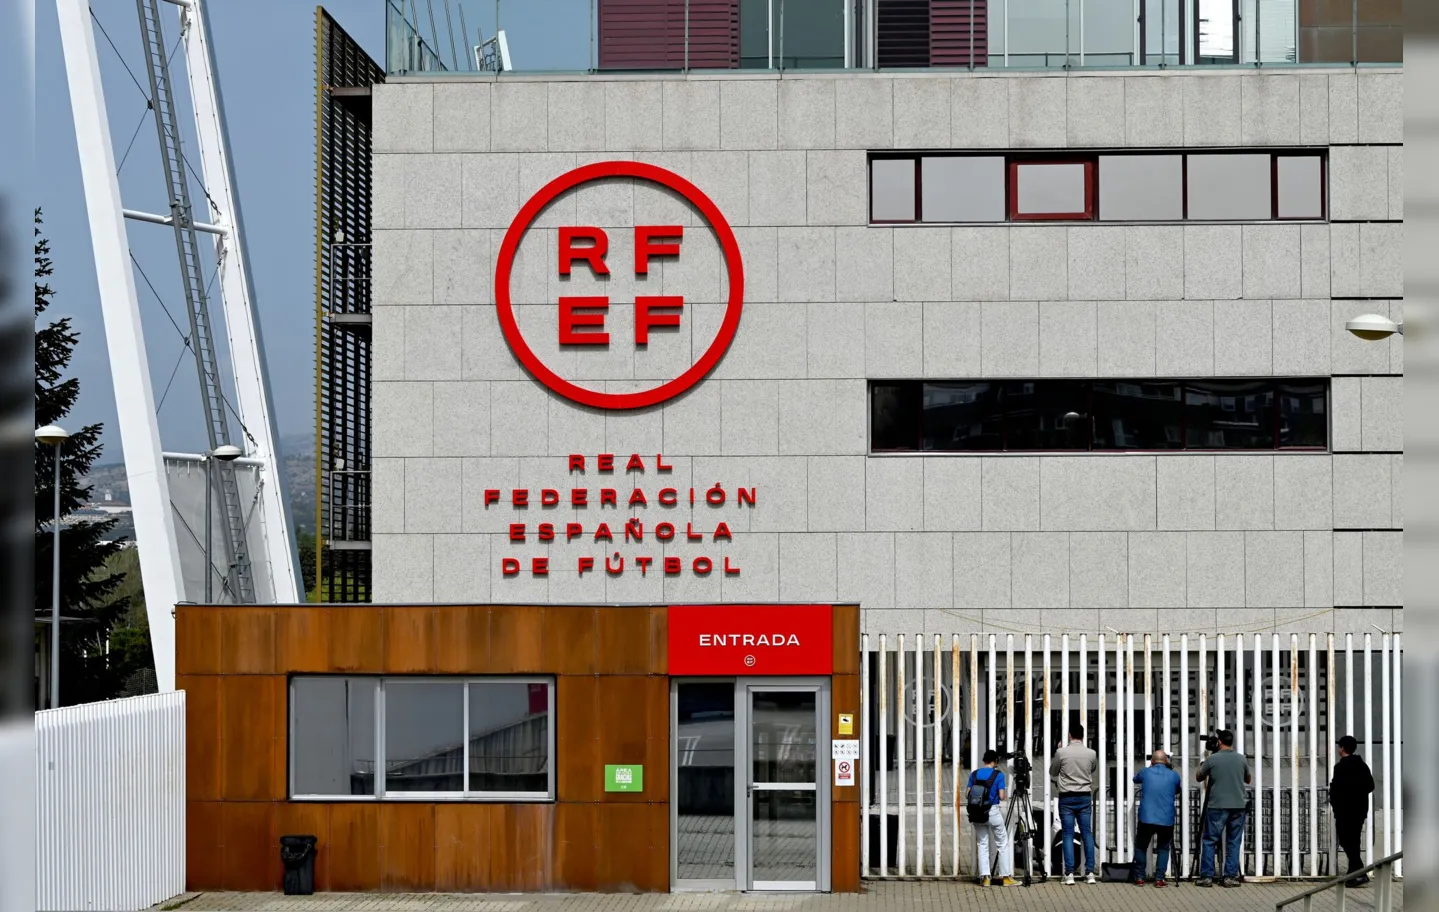 Sede da Federação Espanhola de Futebol